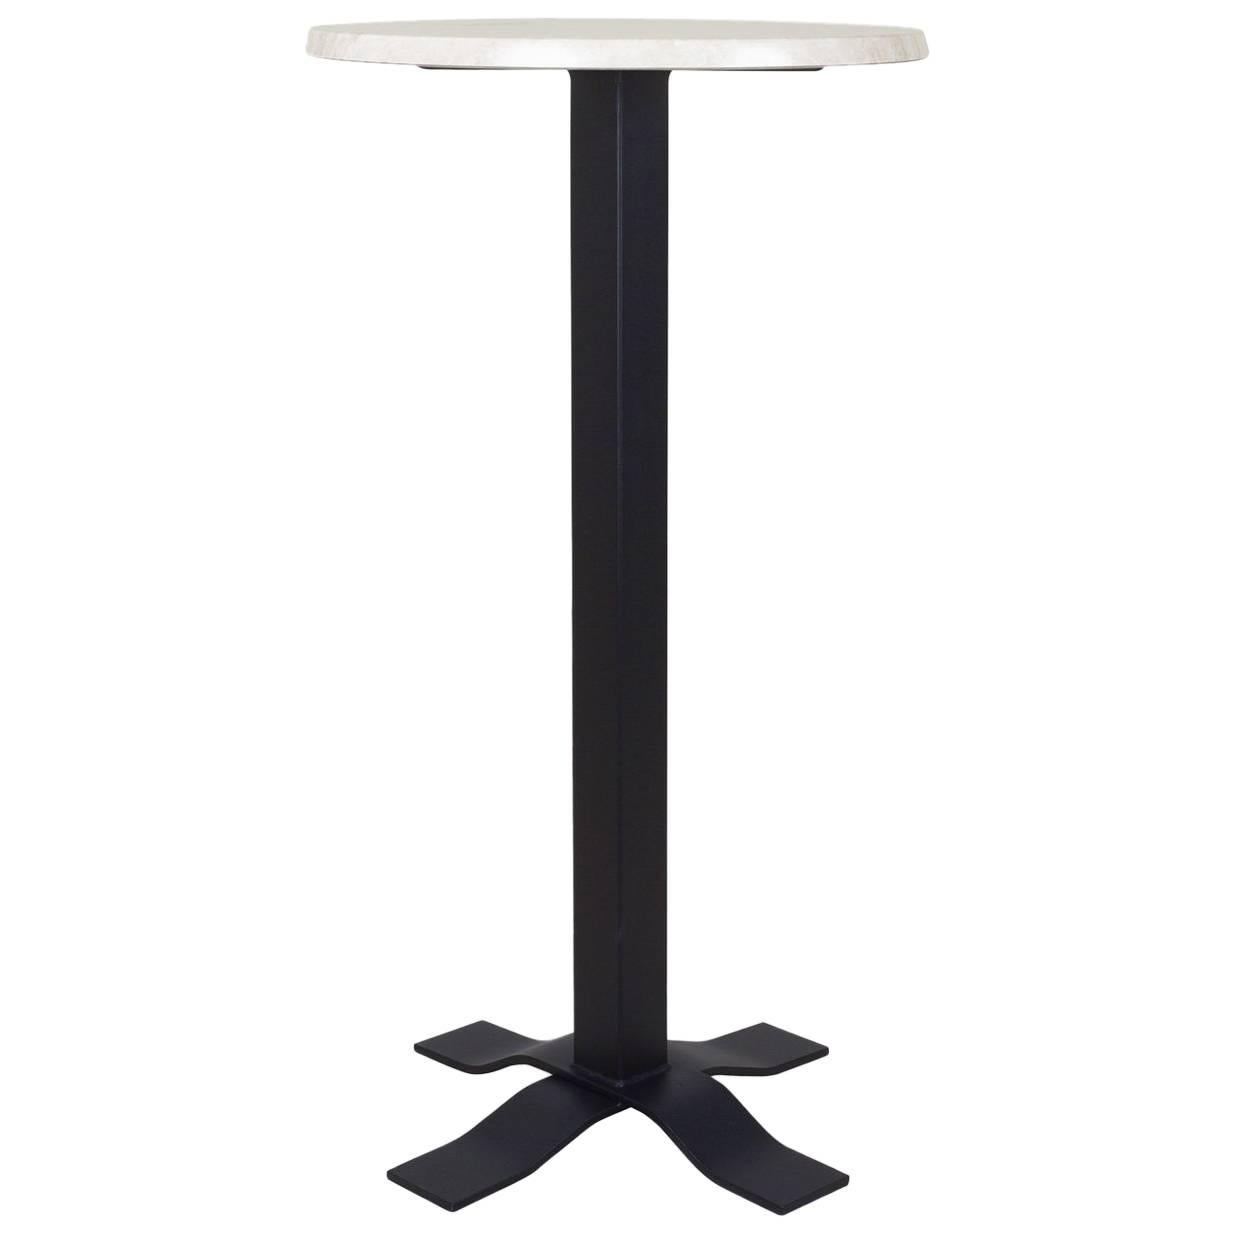 Bistro-Hoher Tisch aus Schmiedeeisen mit Marmorplatte. Für den Innen- und Außenbereich